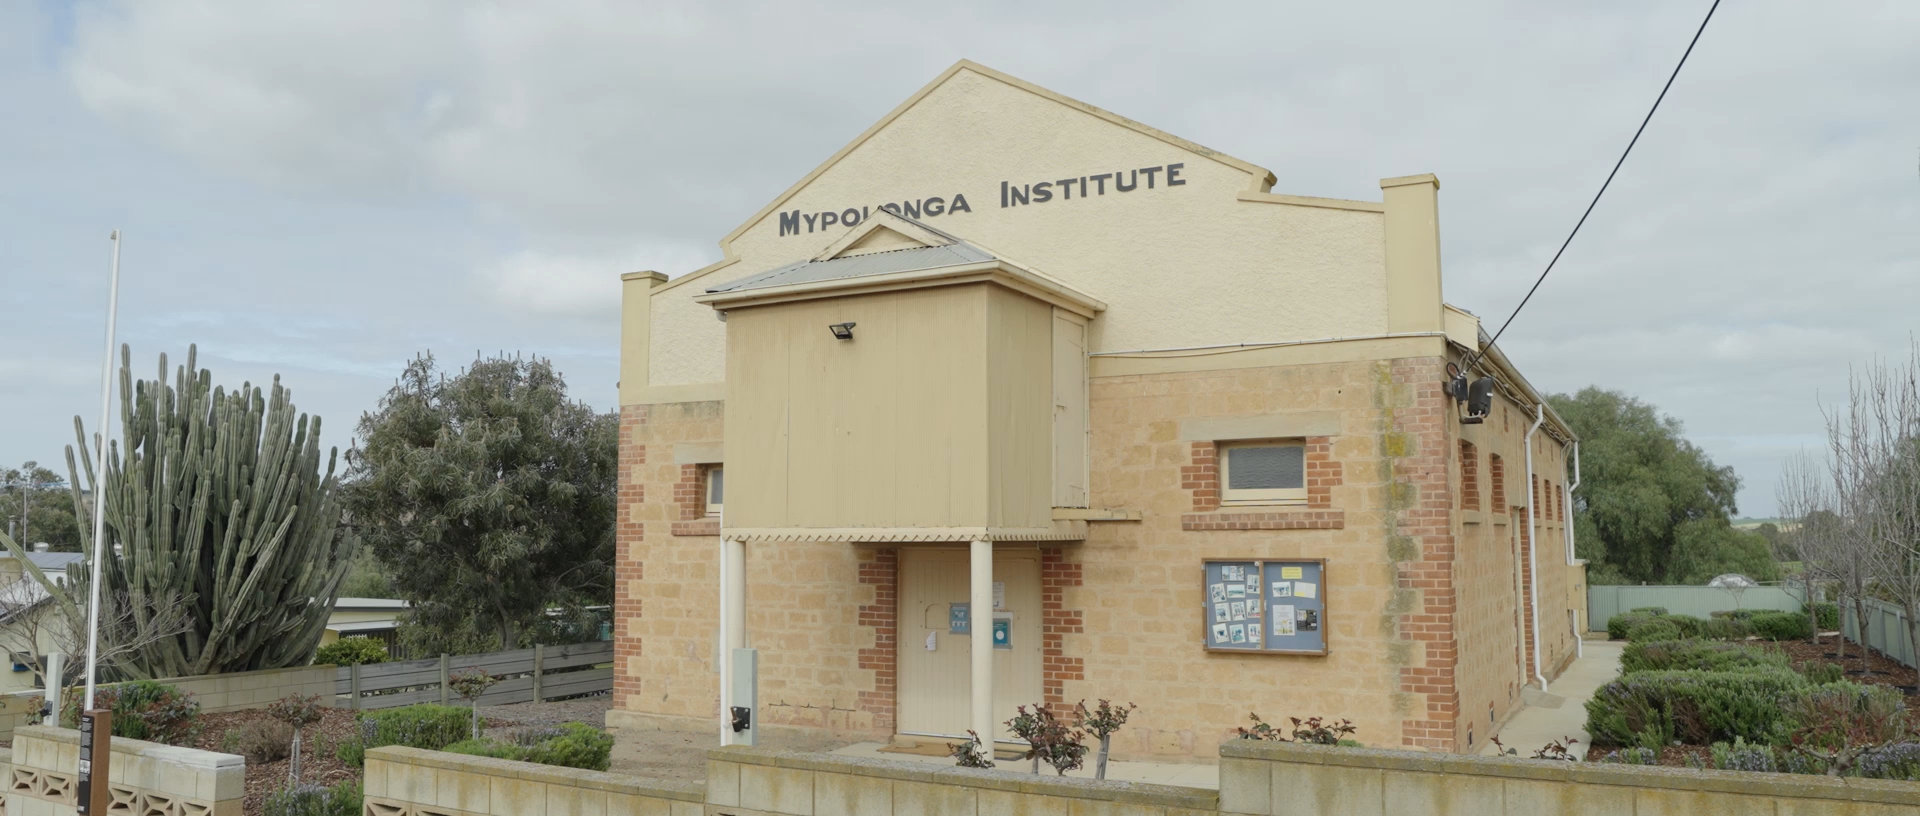 Mypolonga Institute